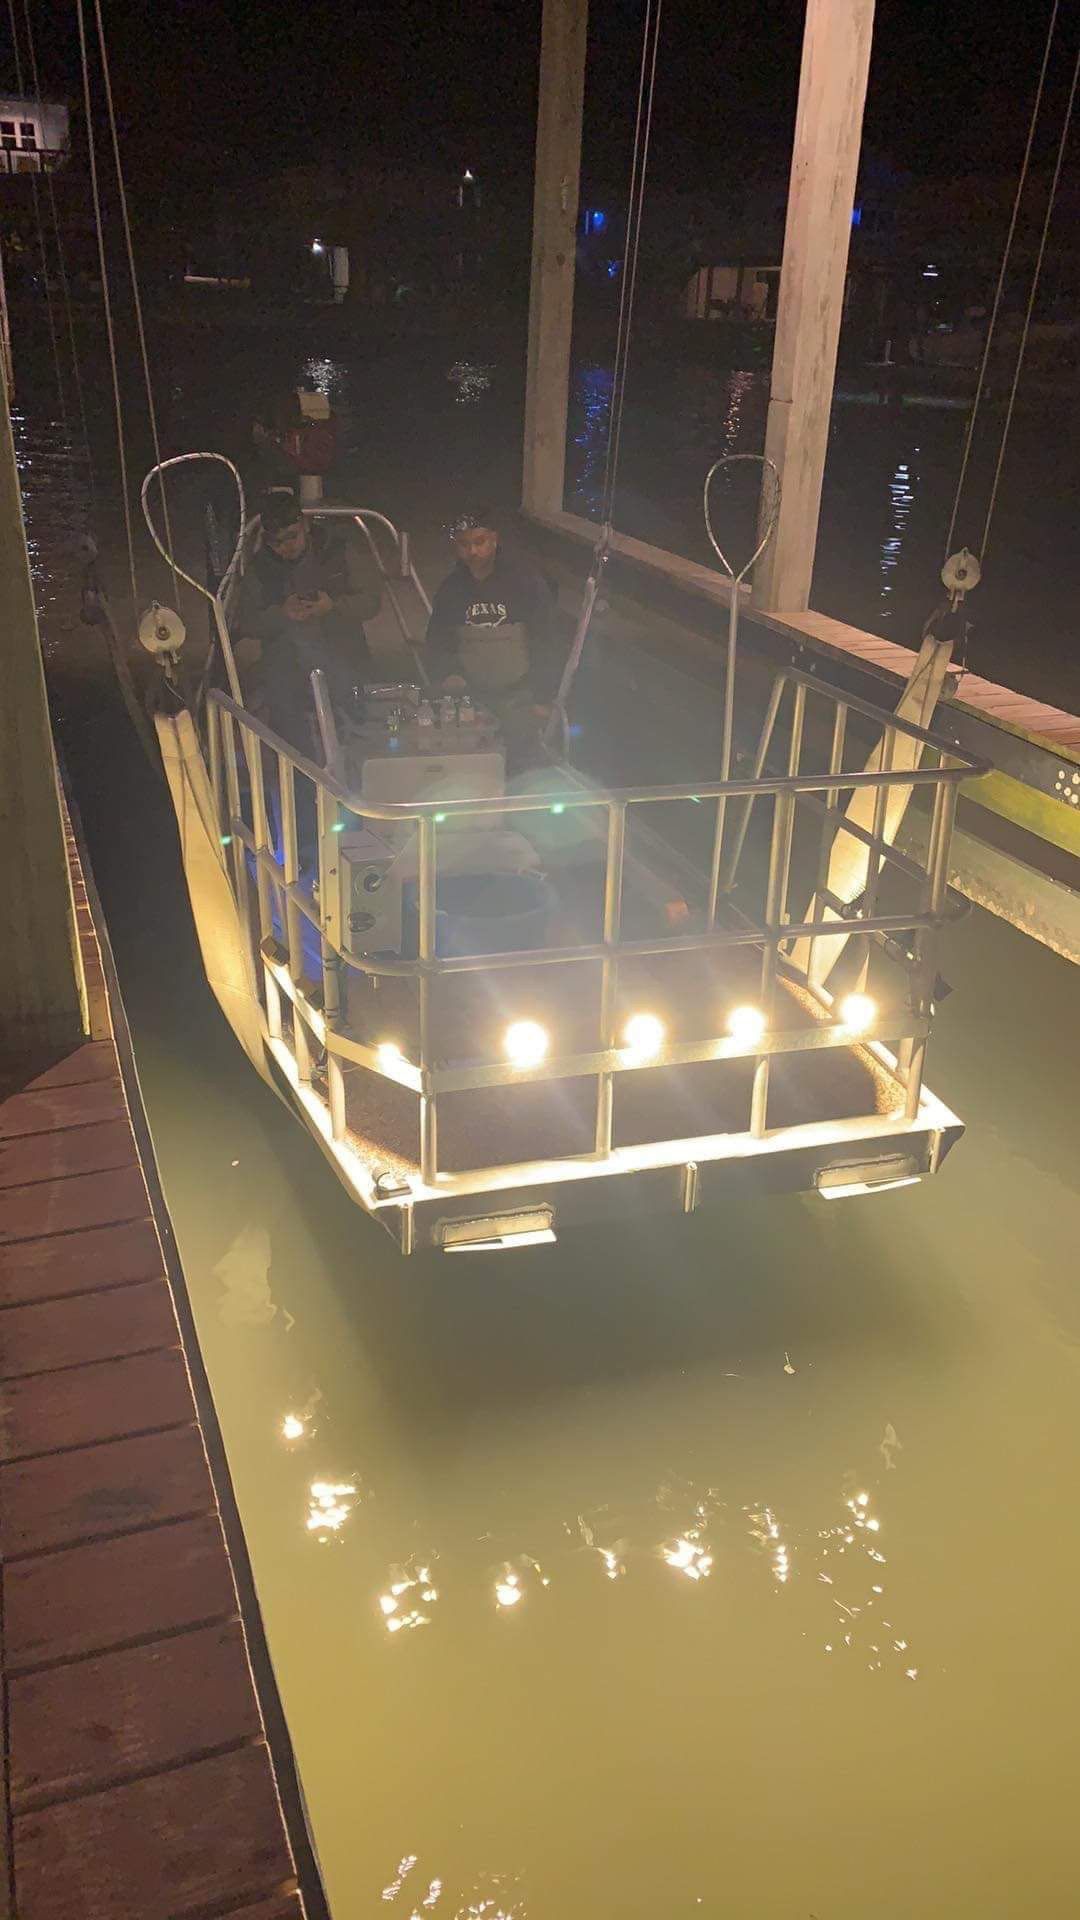 Flounder gigging boat